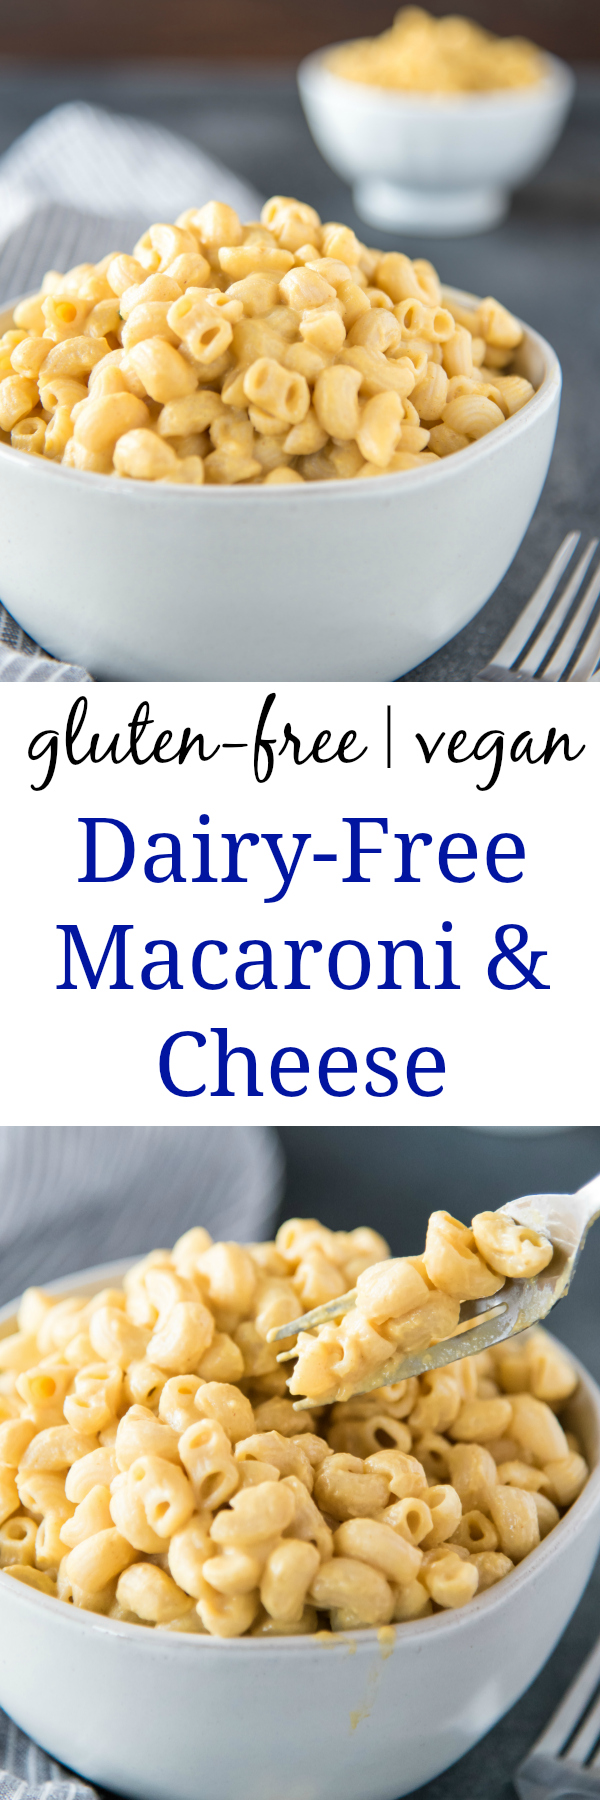 dairy free macaroni & cheese